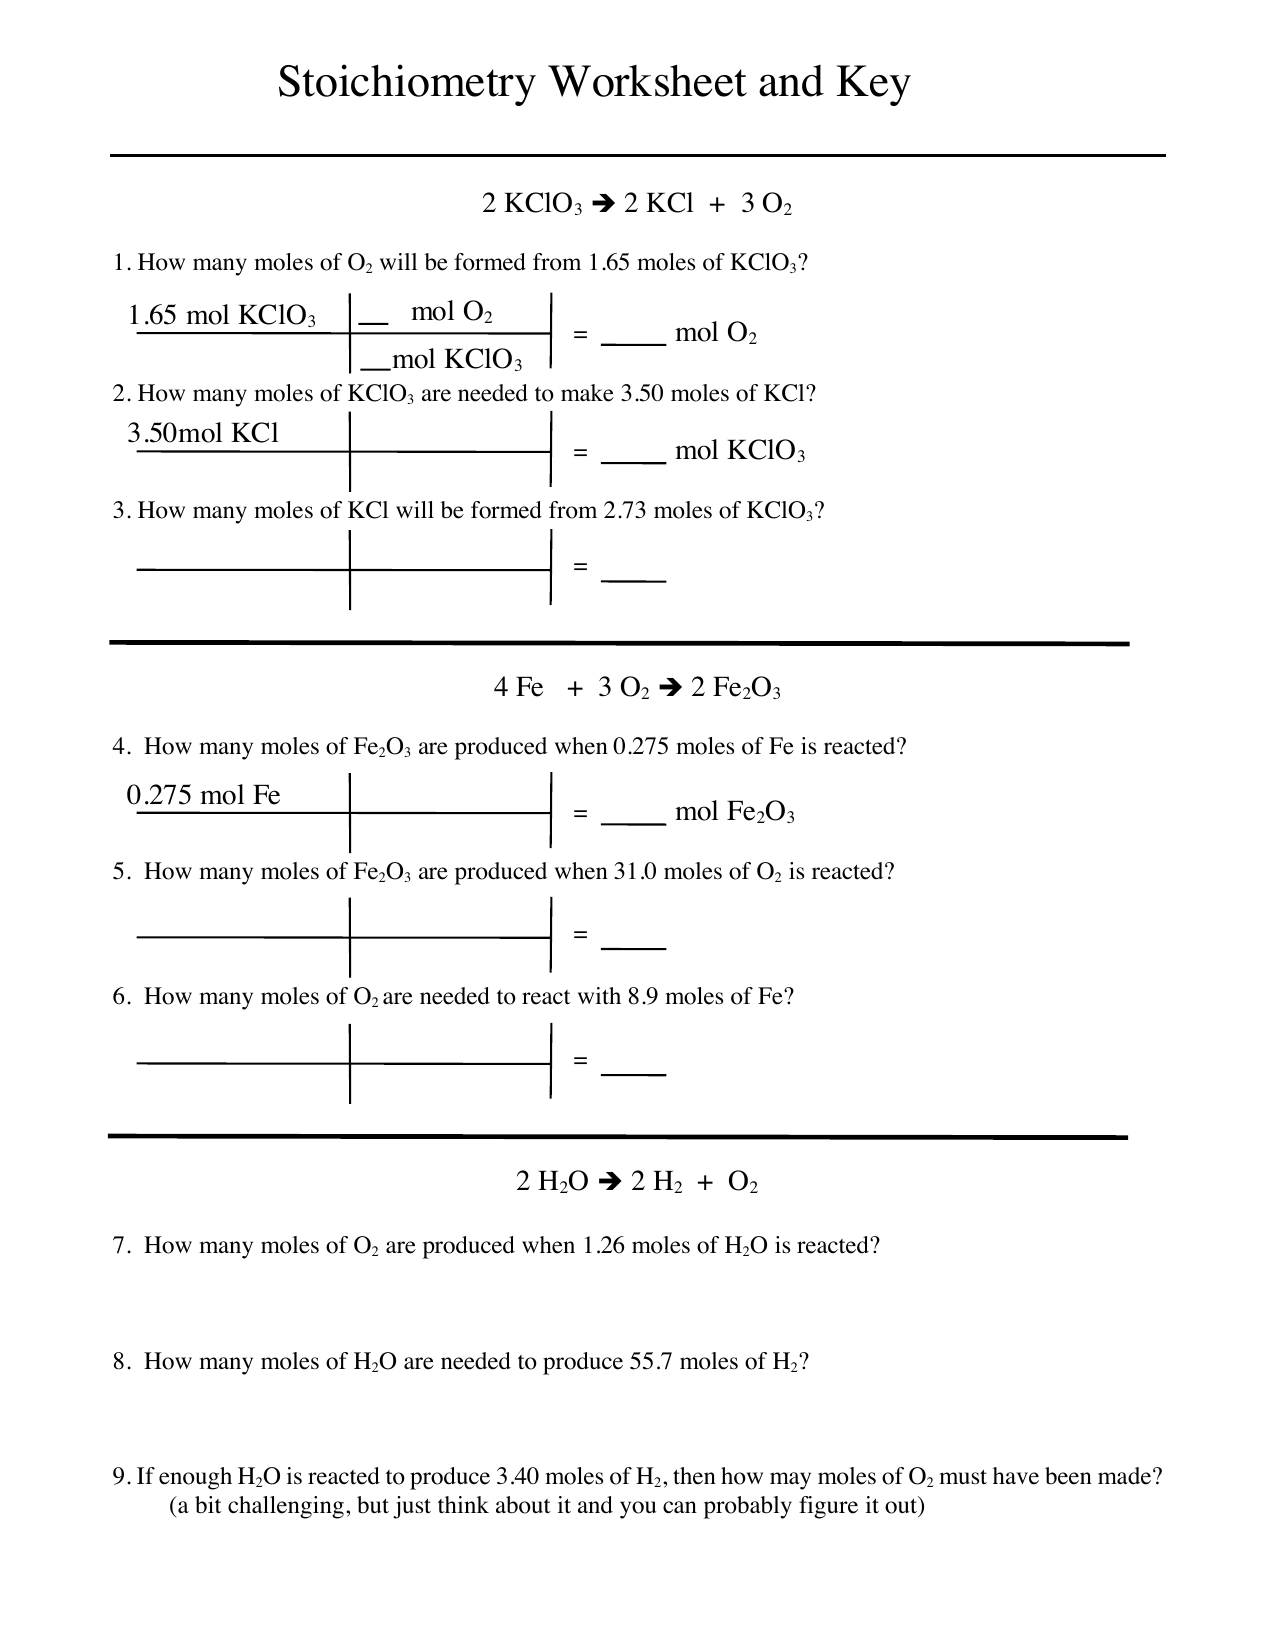 stoichiometry-worksheet-2